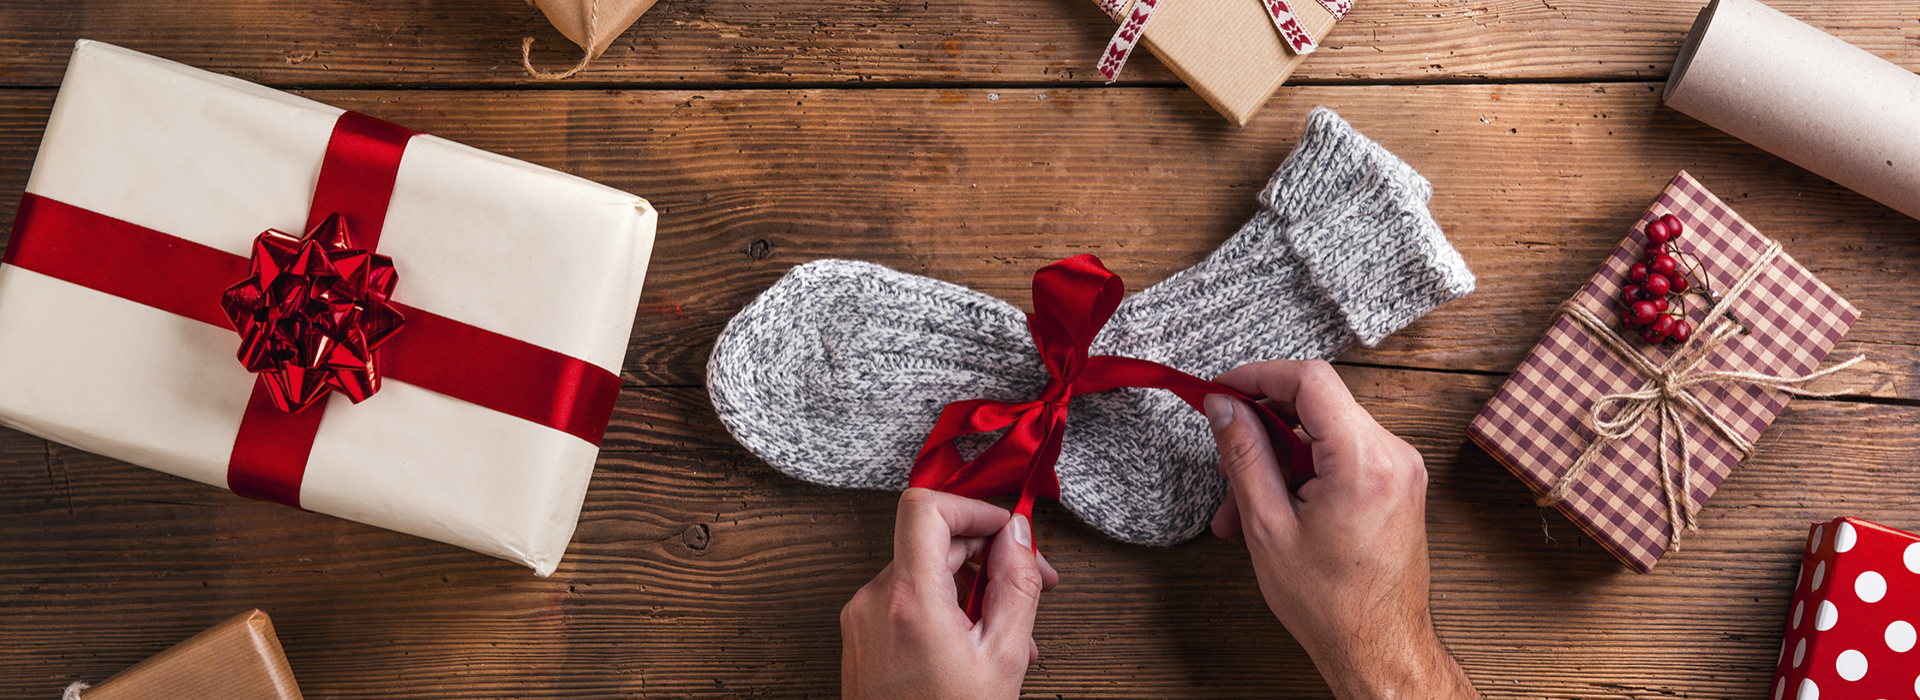 Co kupić, czyli o dylemacie świątecznych prezentów